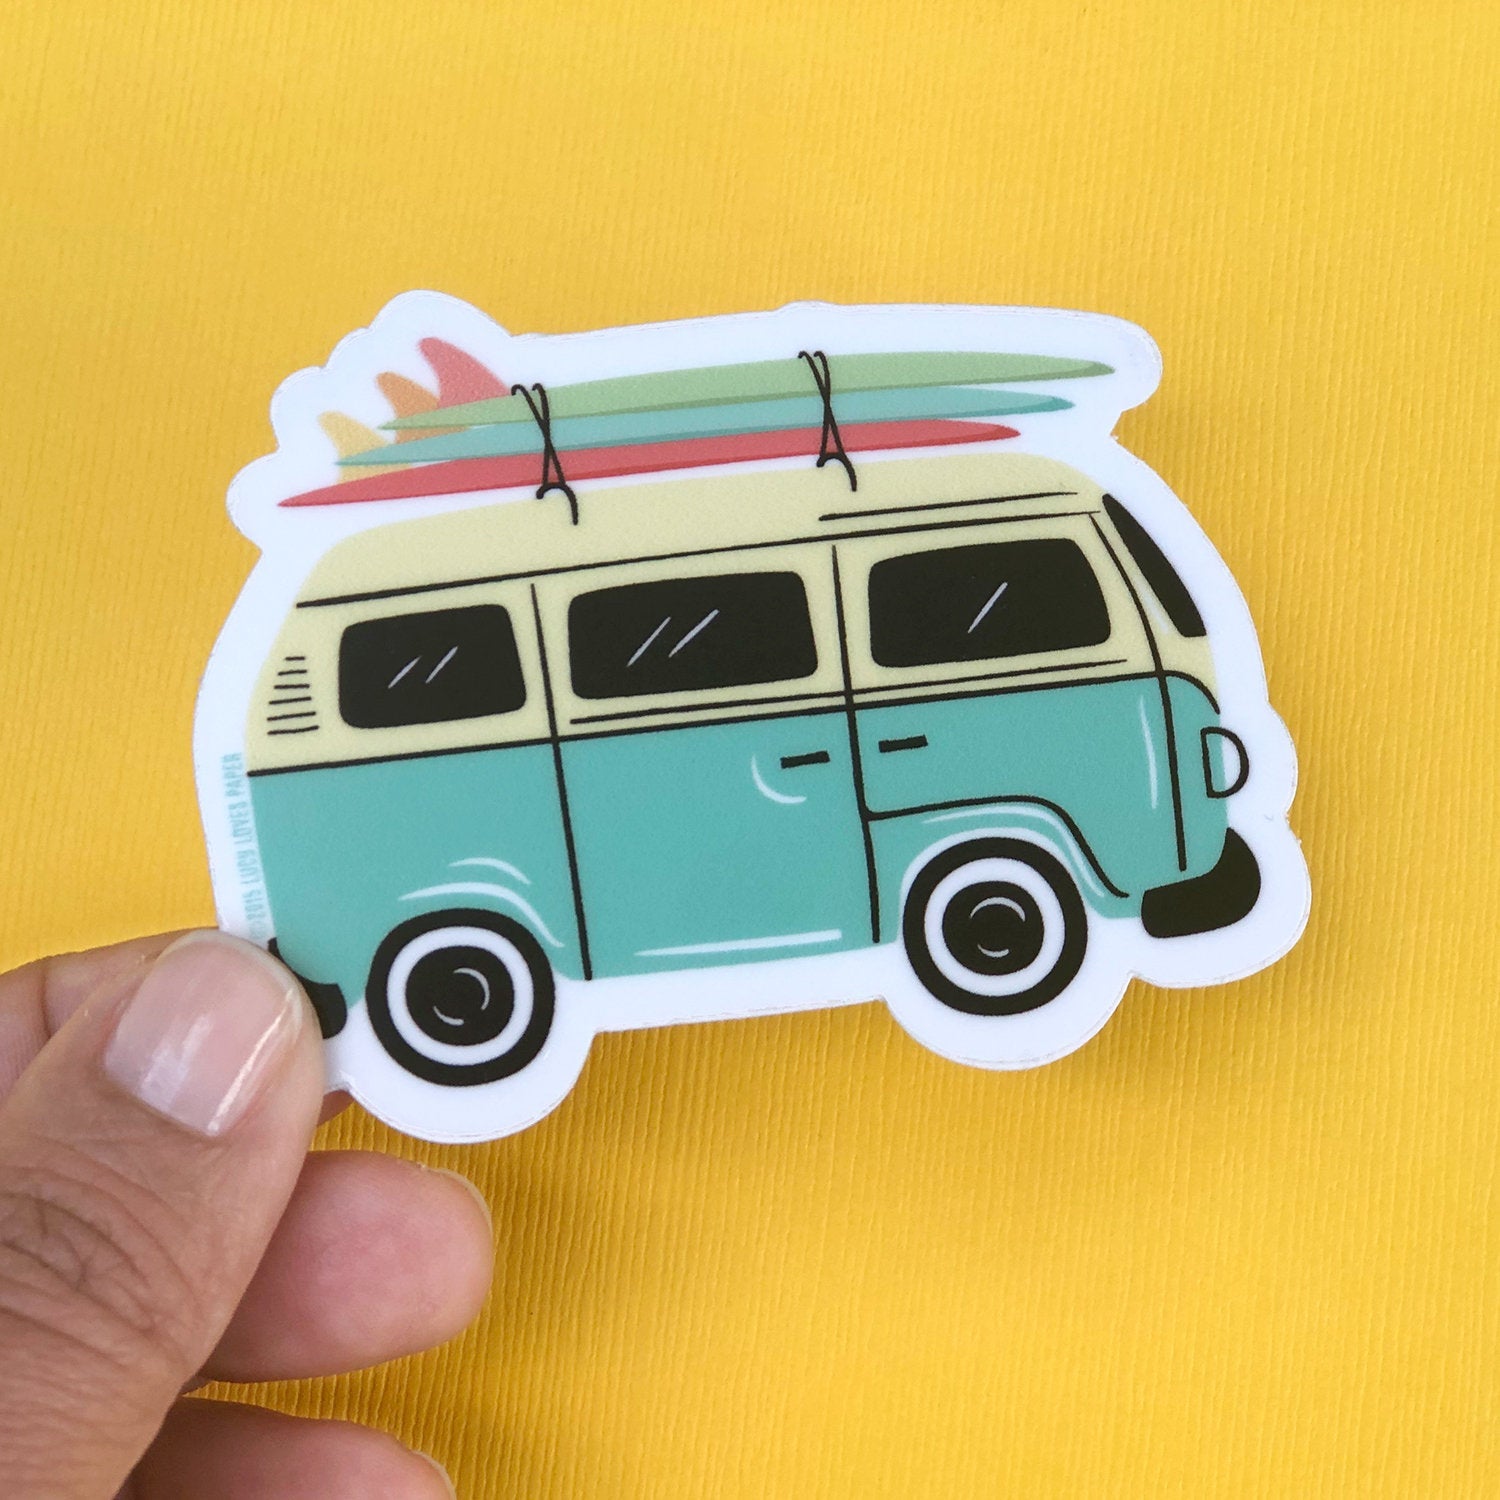 2 x Camper Van Surf Surfing Vinyl Sticker Laptop Travel Luggage